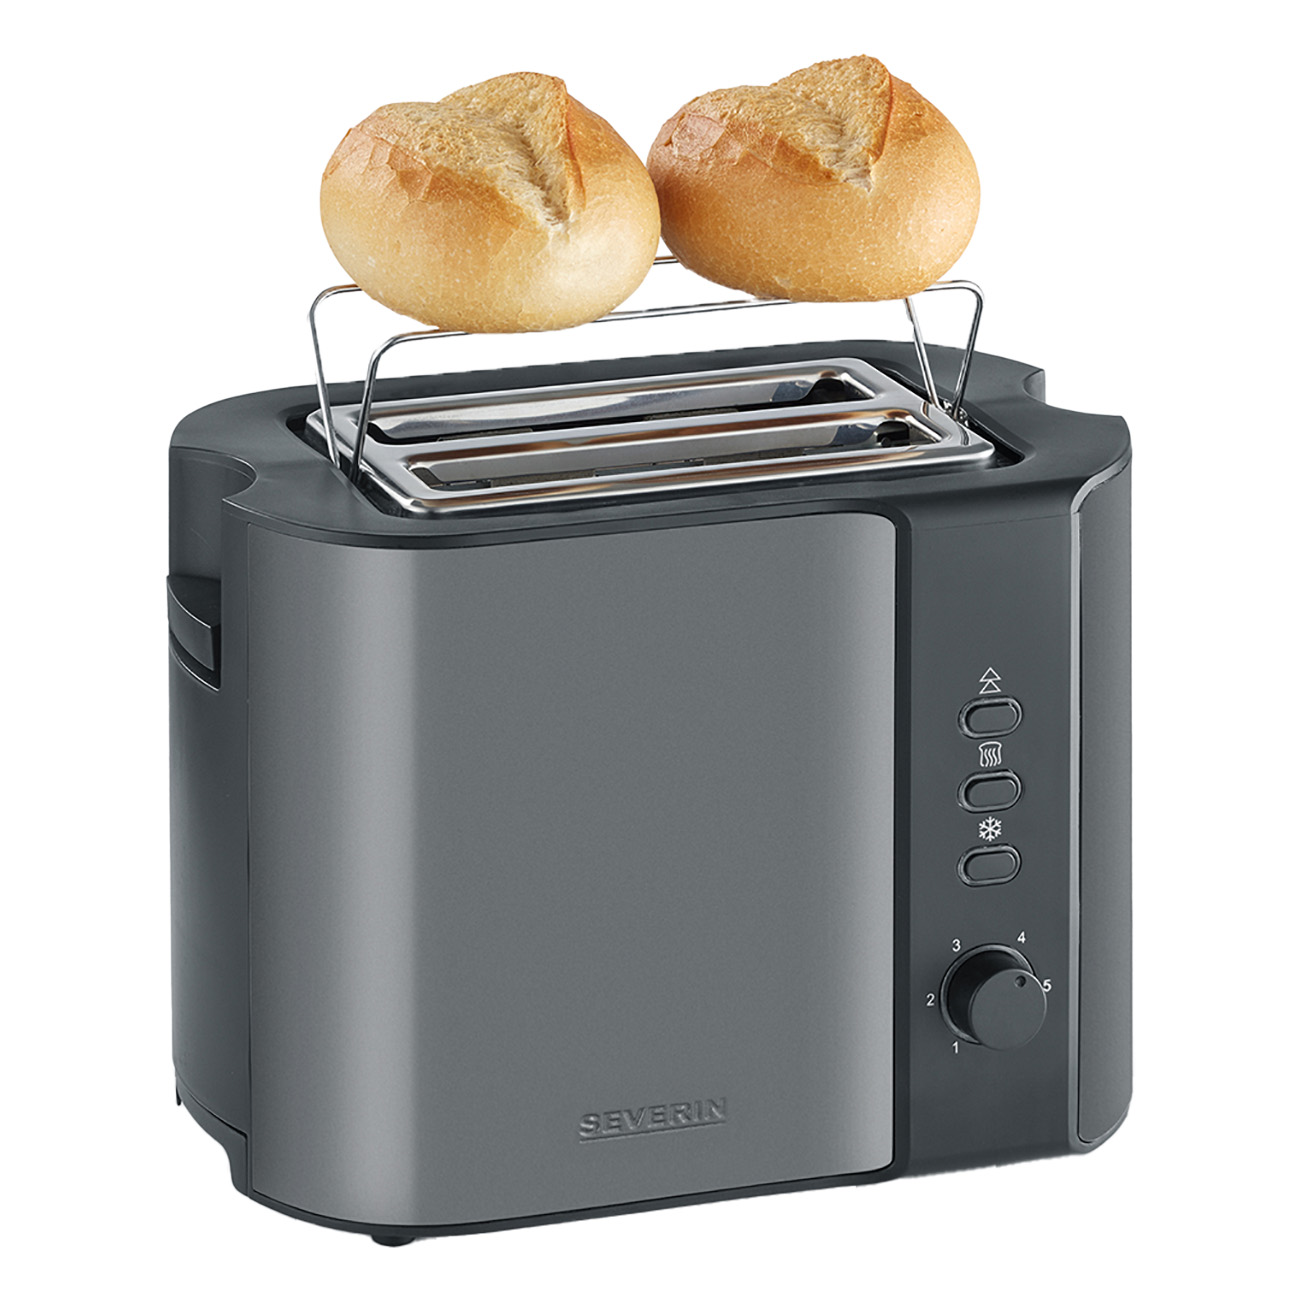 Grau-metallic SEVERIN / Schwarz (860 AT9541 Watt, grau-met./schwarz Toaster Toaster 2,0) Schlitze: